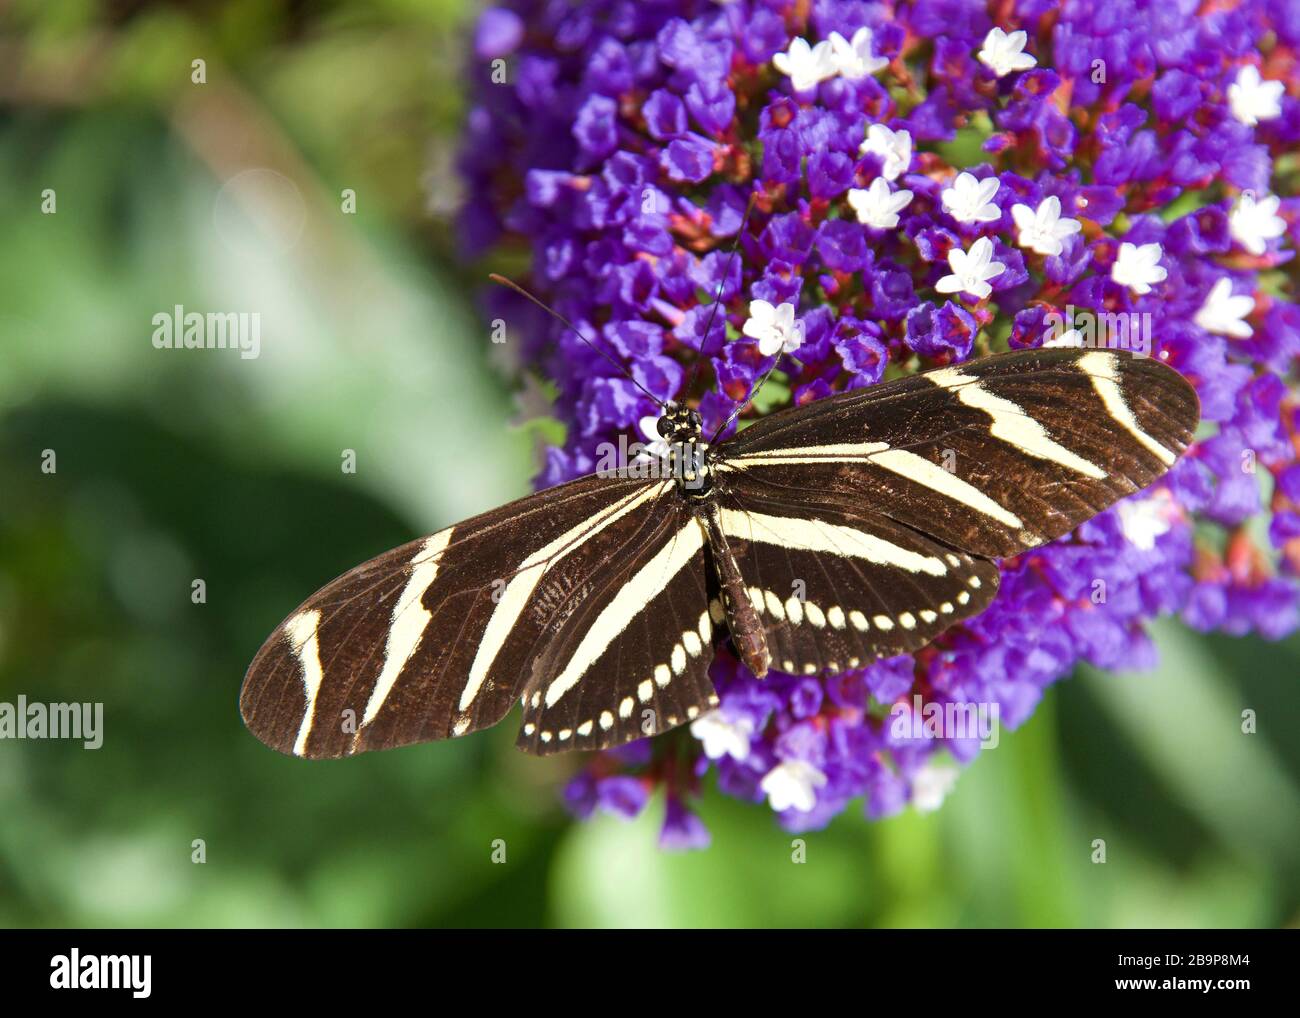 Zebra farfalla ad ala lunga appoggiata su fiori viola e bianchi, vista dall'alto Foto Stock